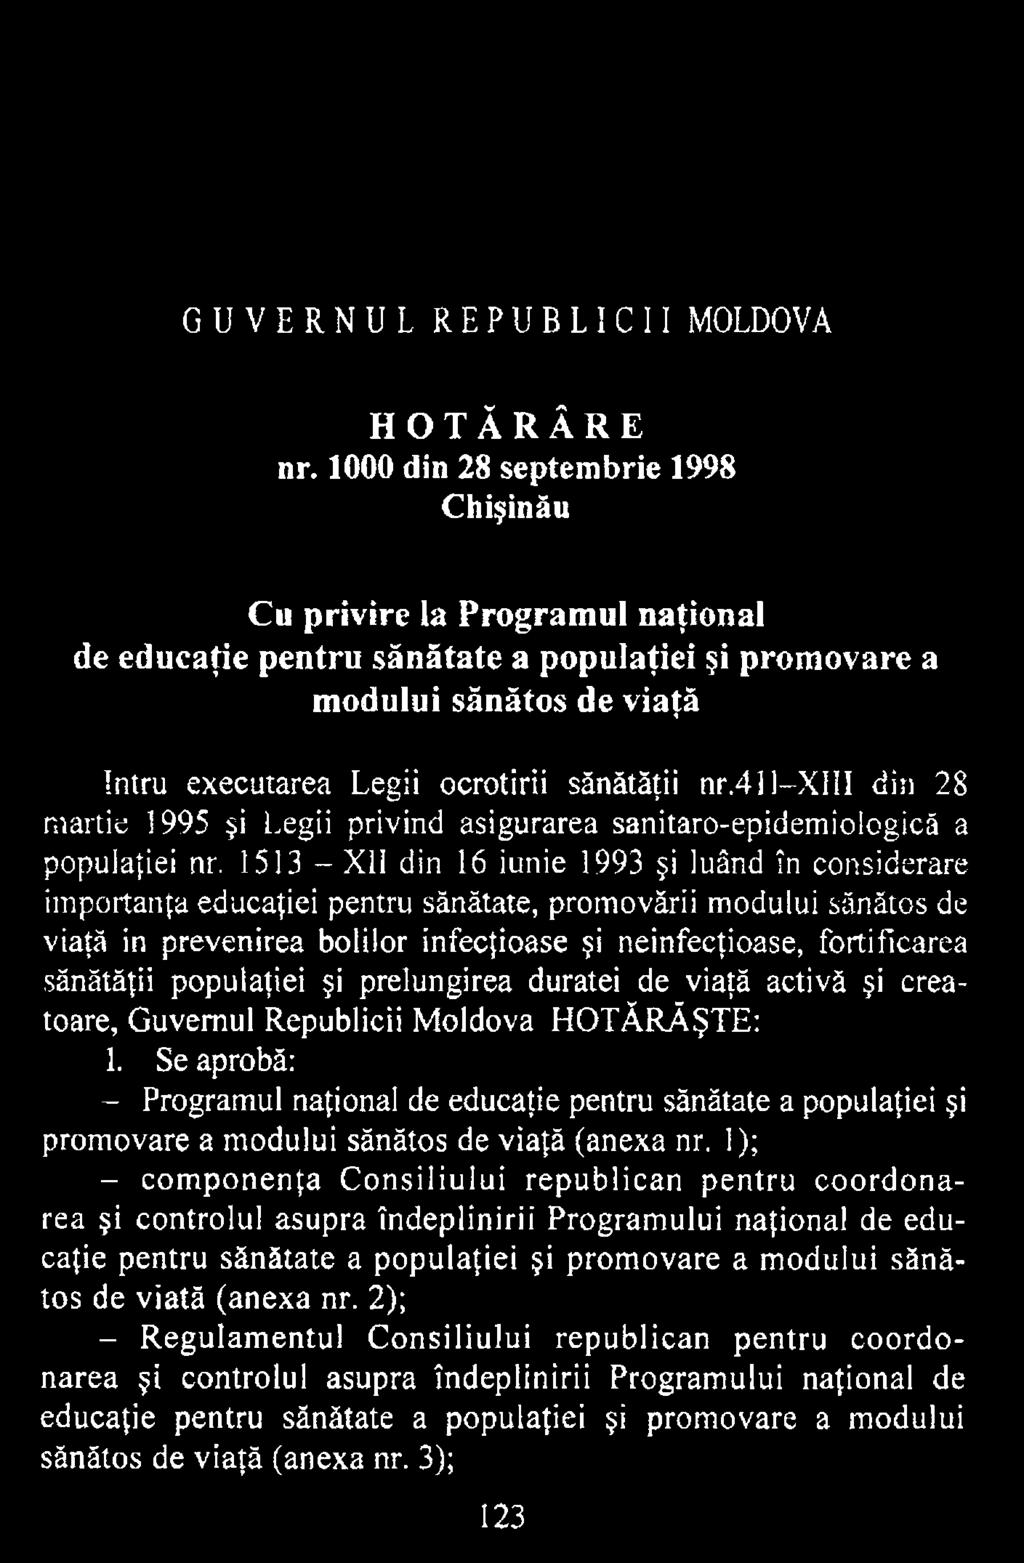 sănătăţii populaţiei şi prelungirea duratei de viaţă activă şi creatoare, Guvernul Republicii Moldova HOTĂRĂŞTE: 1.